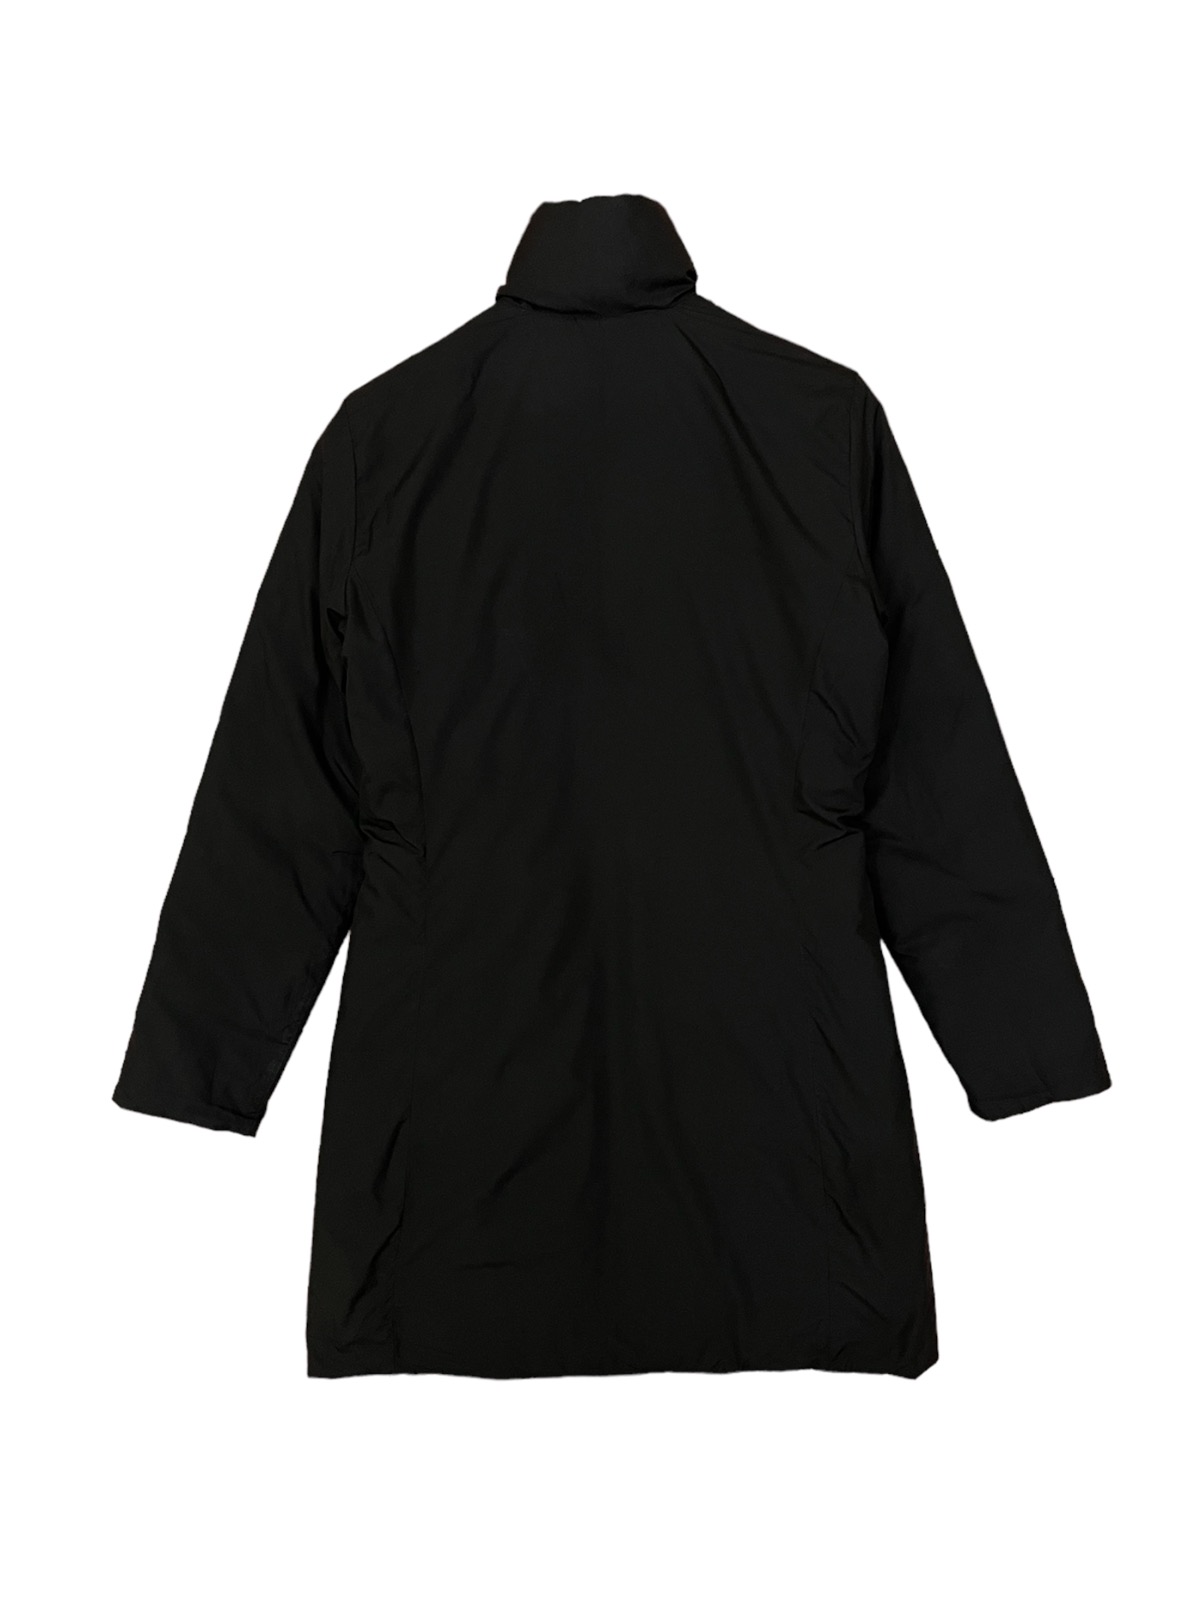 Moncler long puffer jacket reversible down jacket - 9